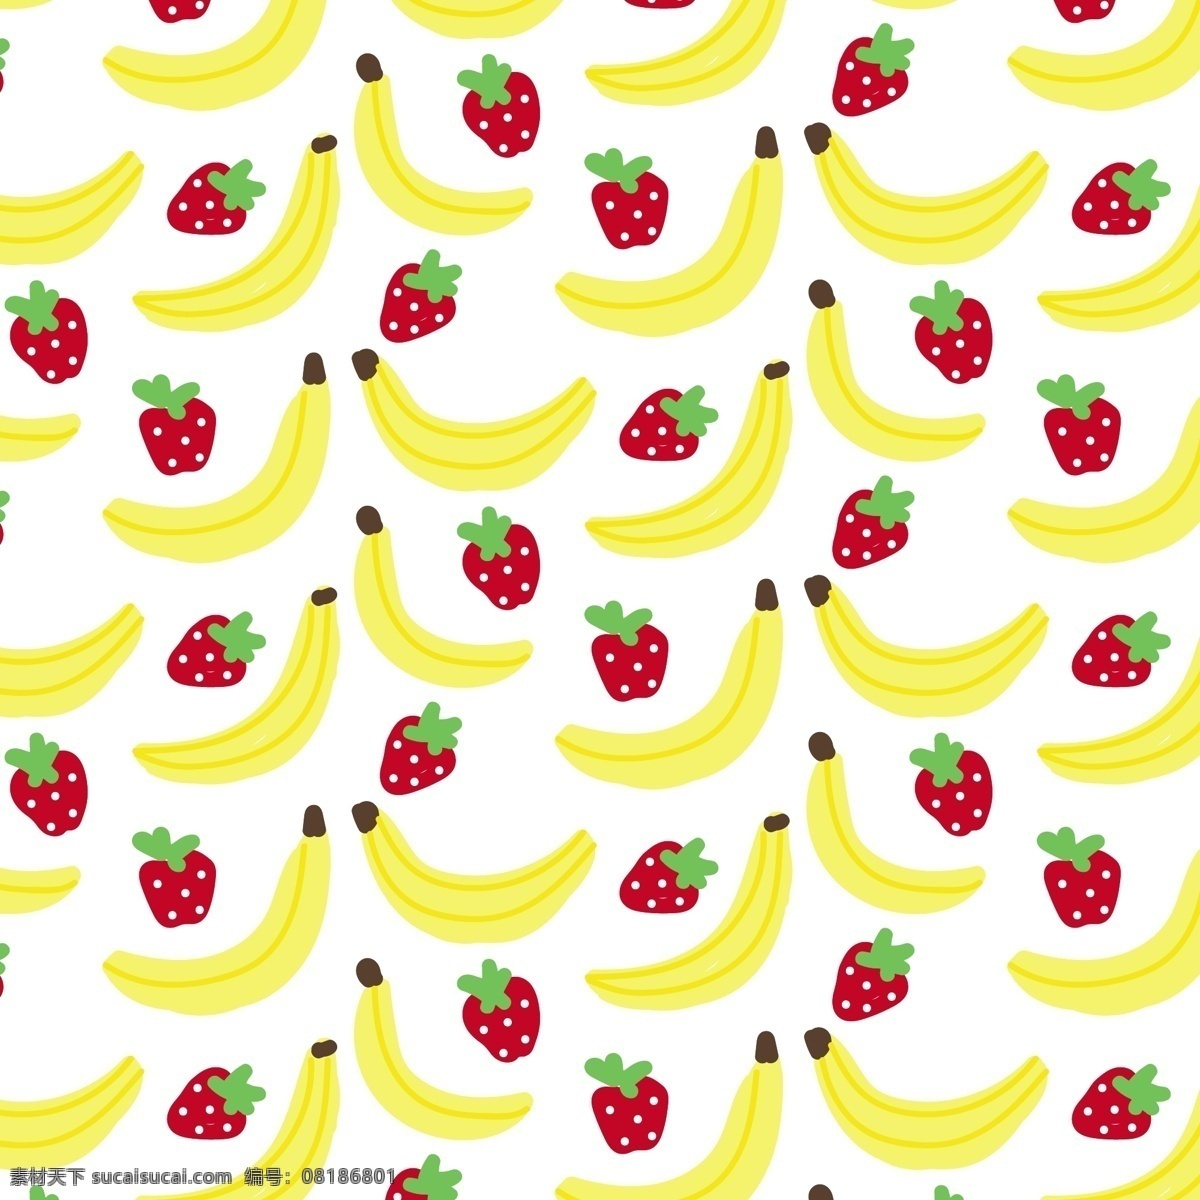 简单 水果 图案 背景 夏天 装饰 草莓 无缝 循环 香蕉